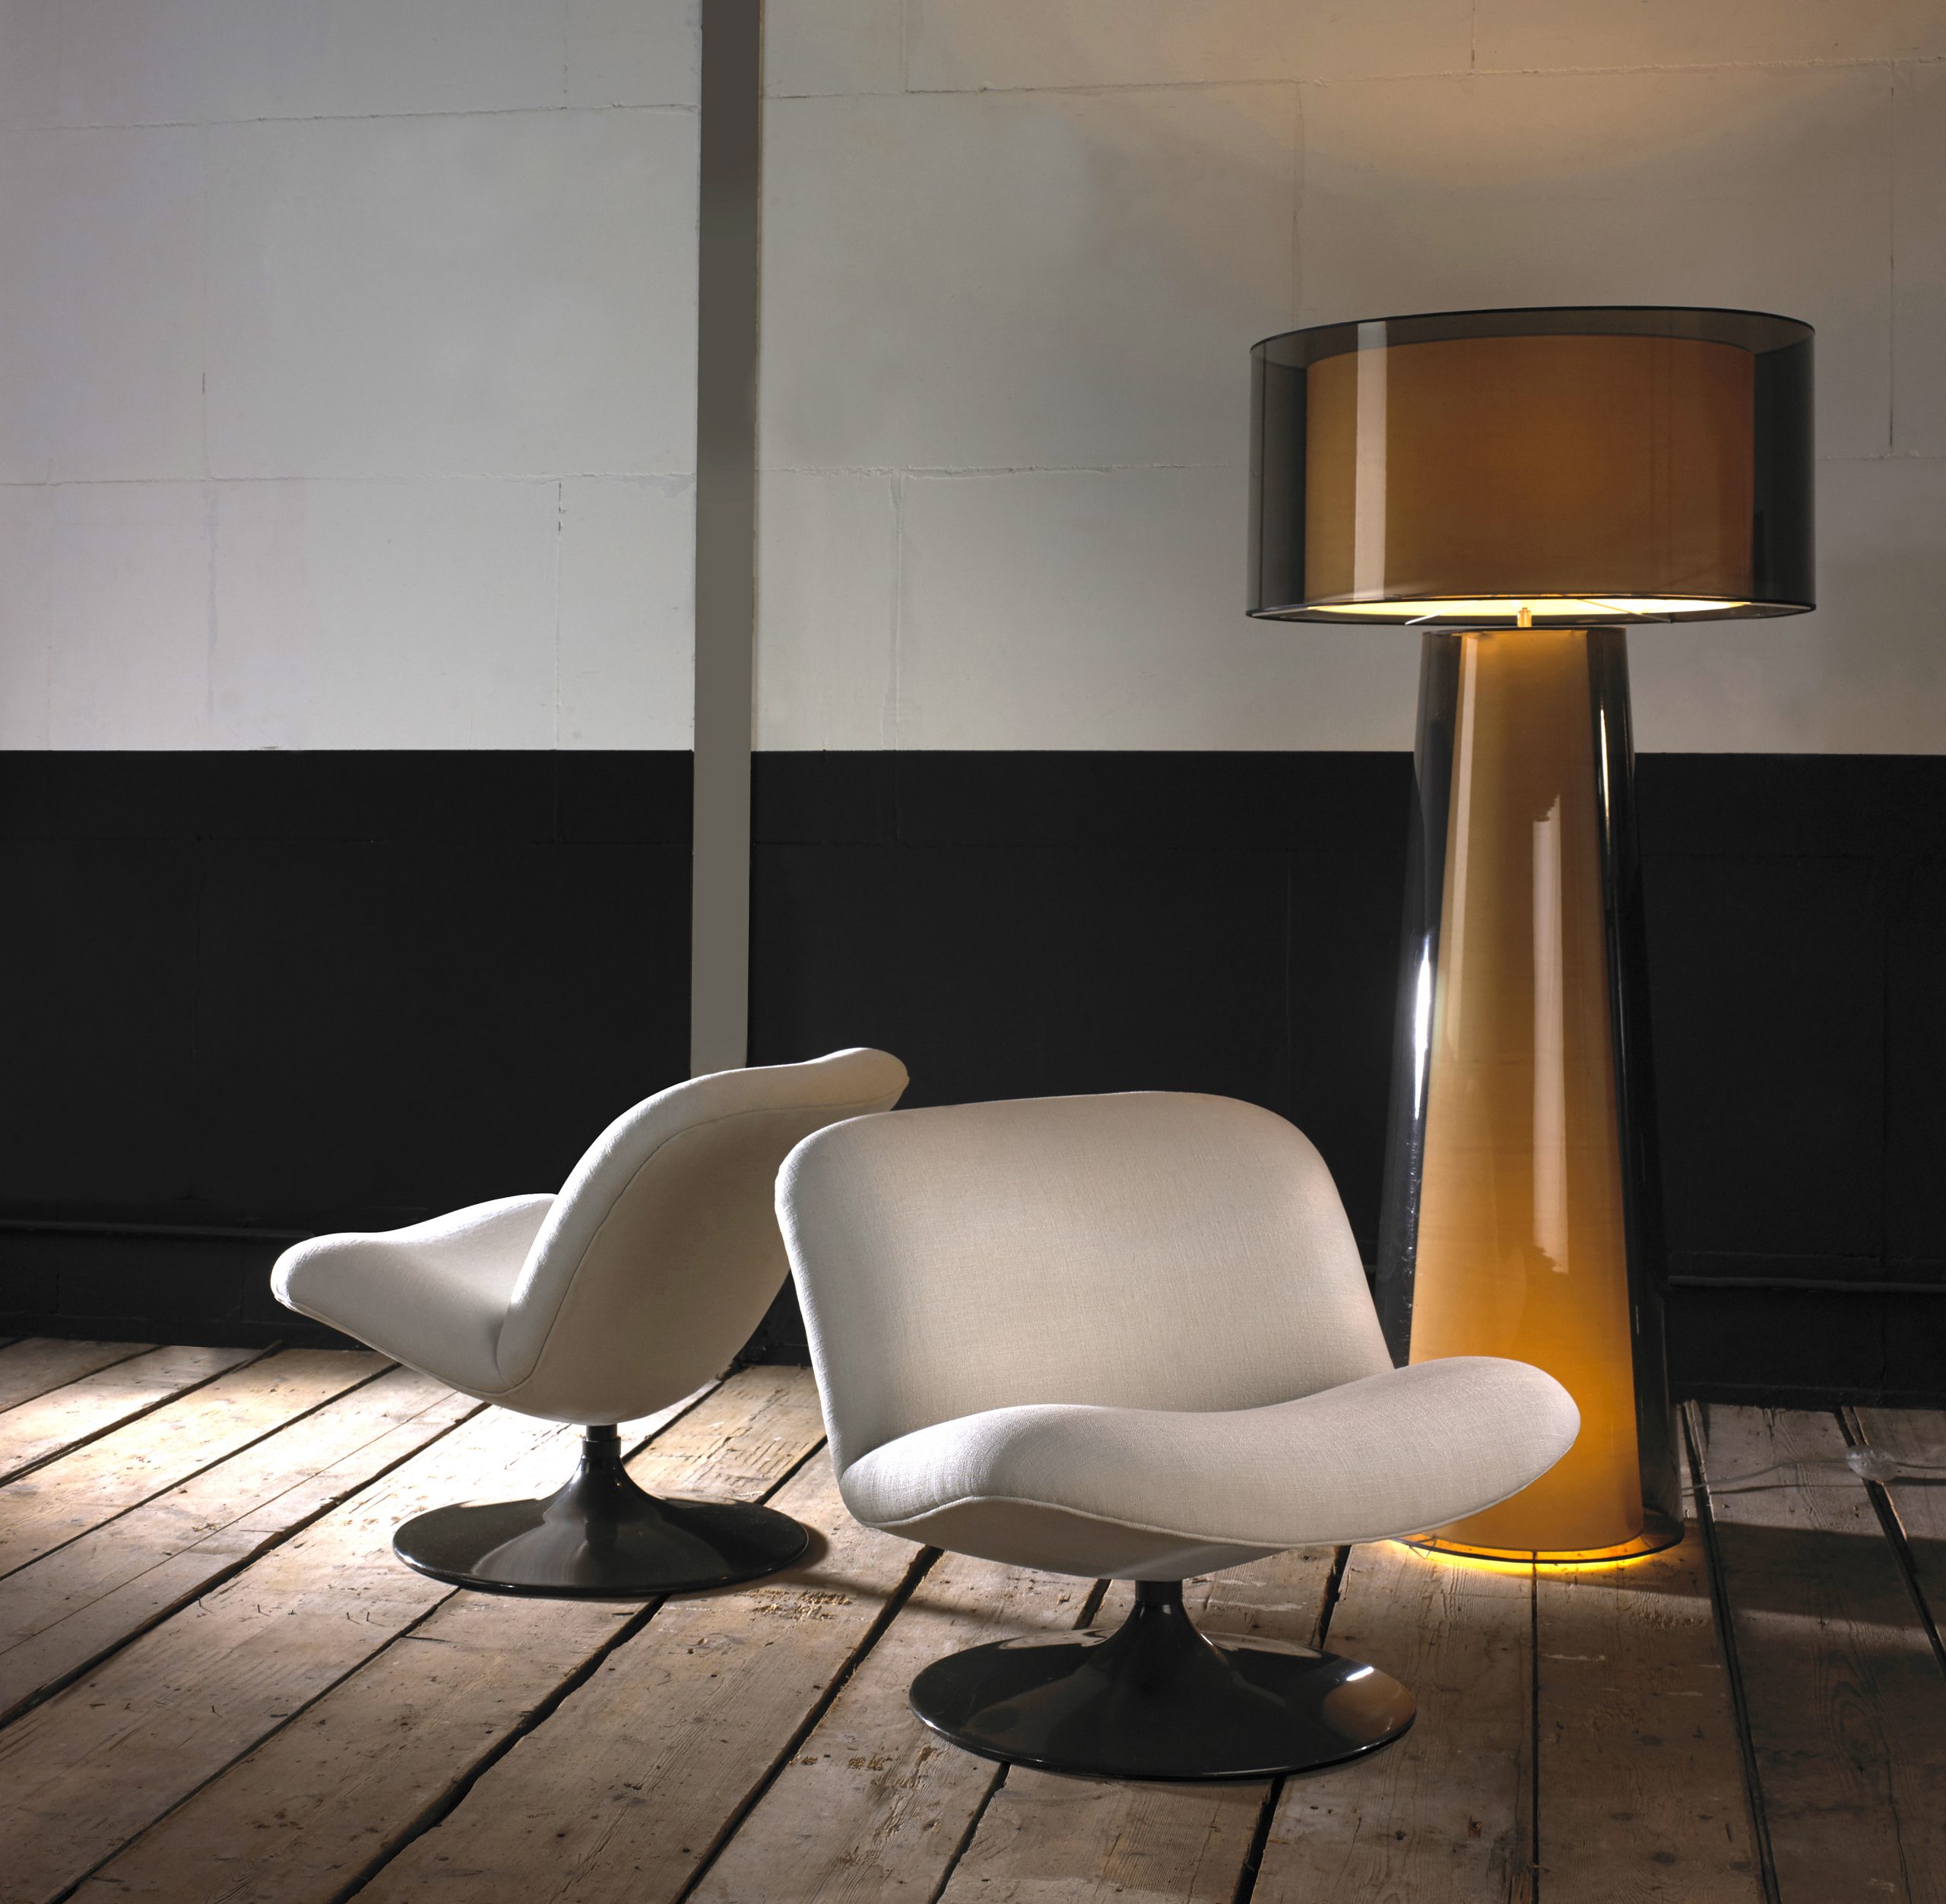 Sfeerbeeld van de stoffen van keymer. Twee stoelen met licht beige stofkleur en grote lamp op een houten vloer.